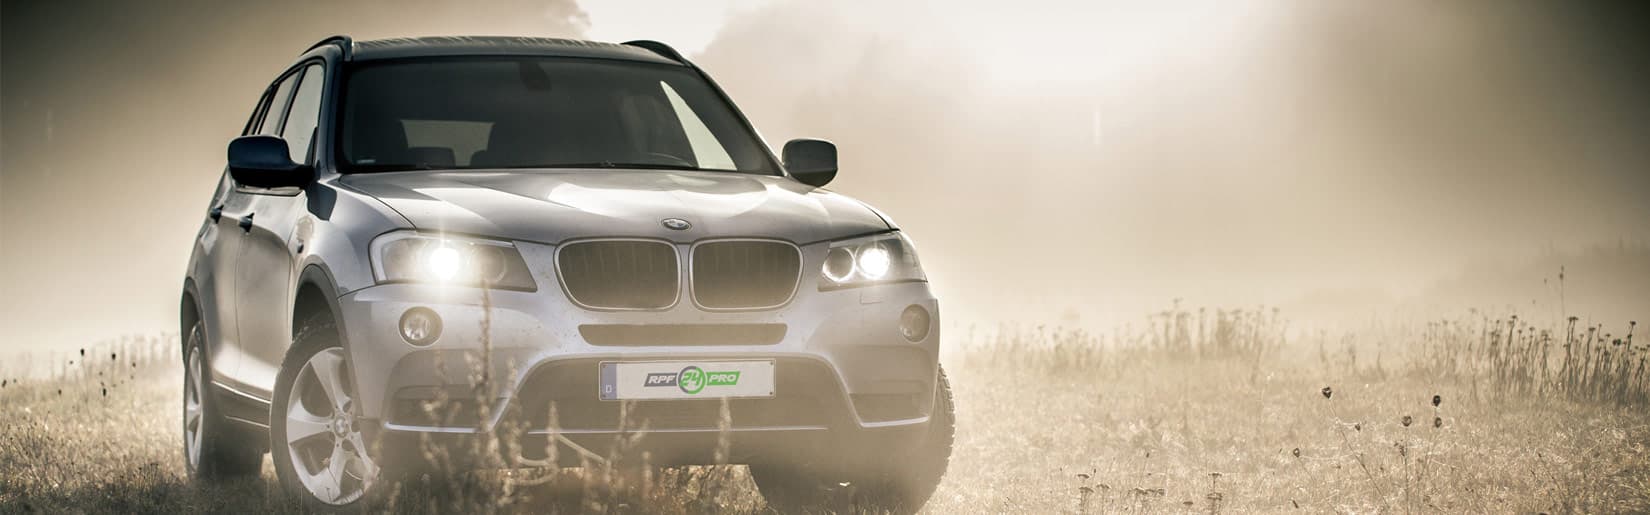 Dieselpartikelfilter reinigen für BMW Fahrzeuge